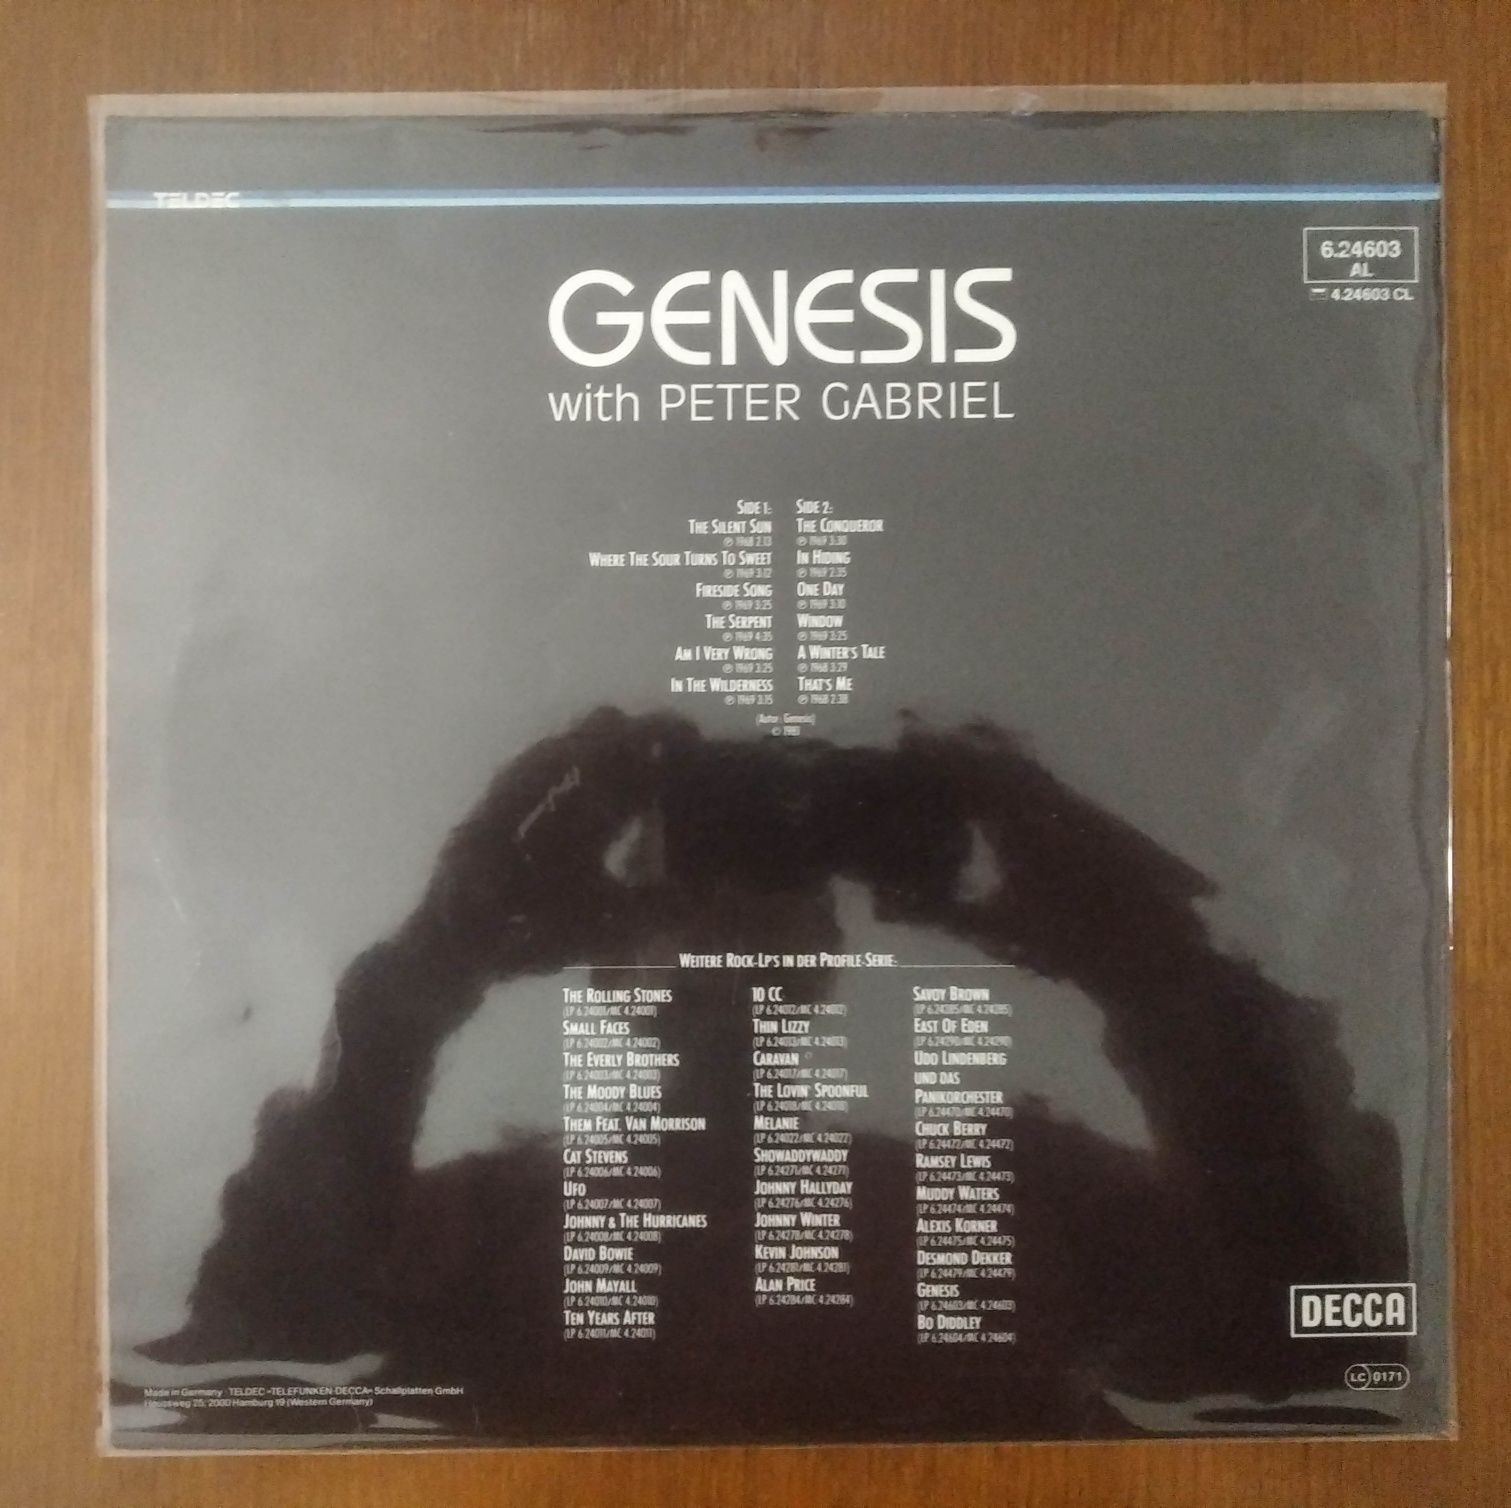 Genesis disco de vinil "Genesis with Peter Gabriel"